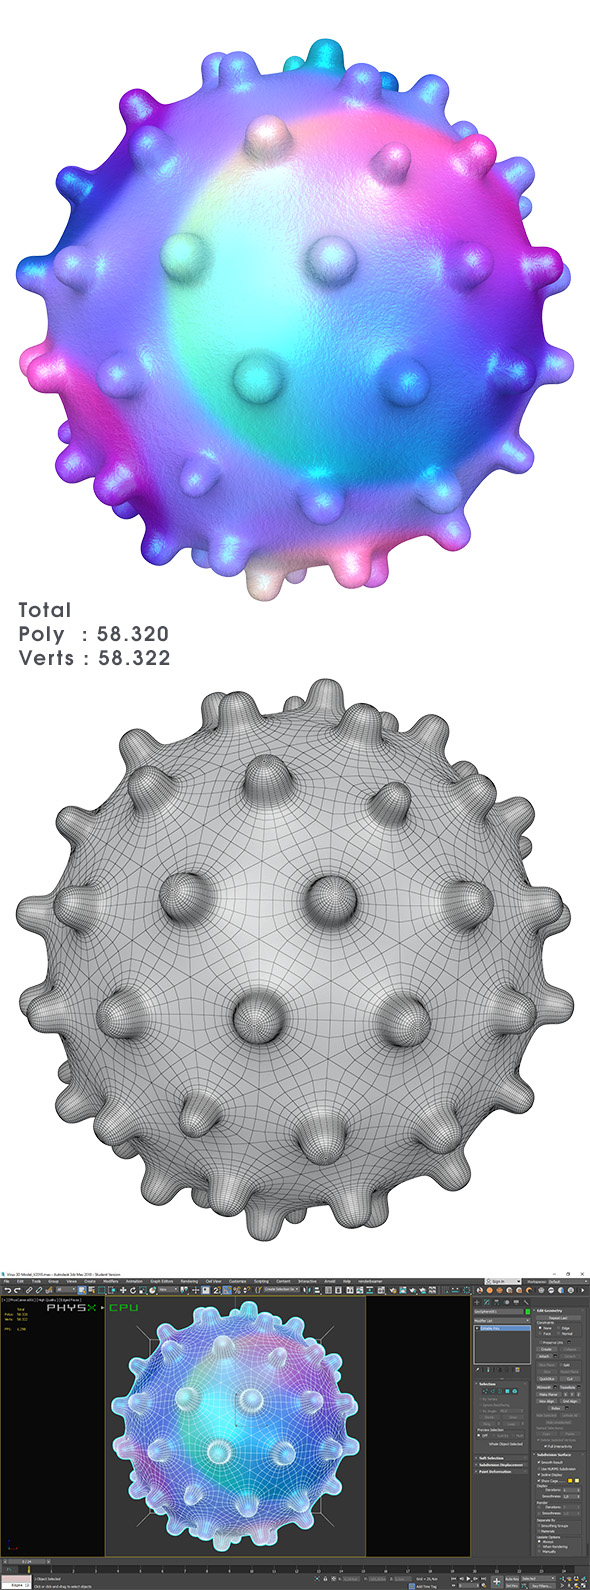 Virus 3D Model - 3Docean 25641764